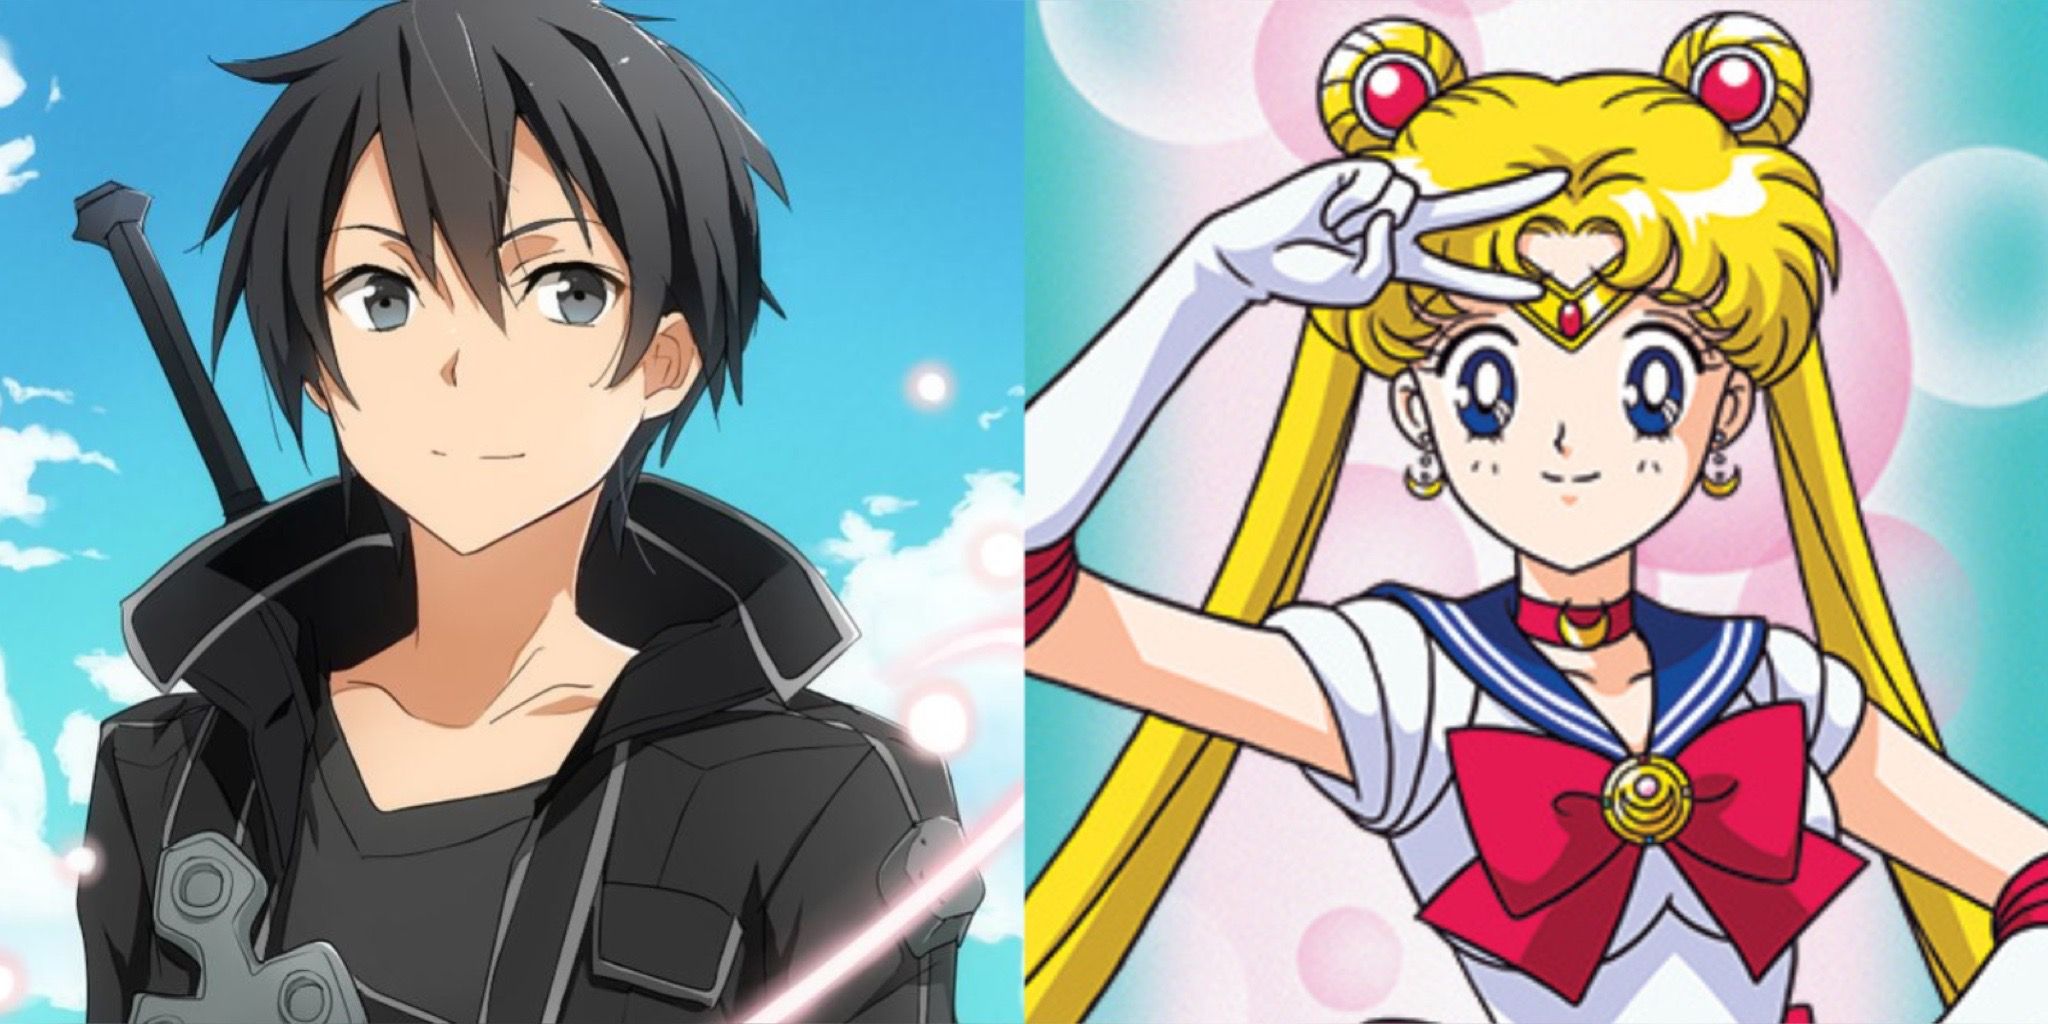 Kirito and Sailor Moon